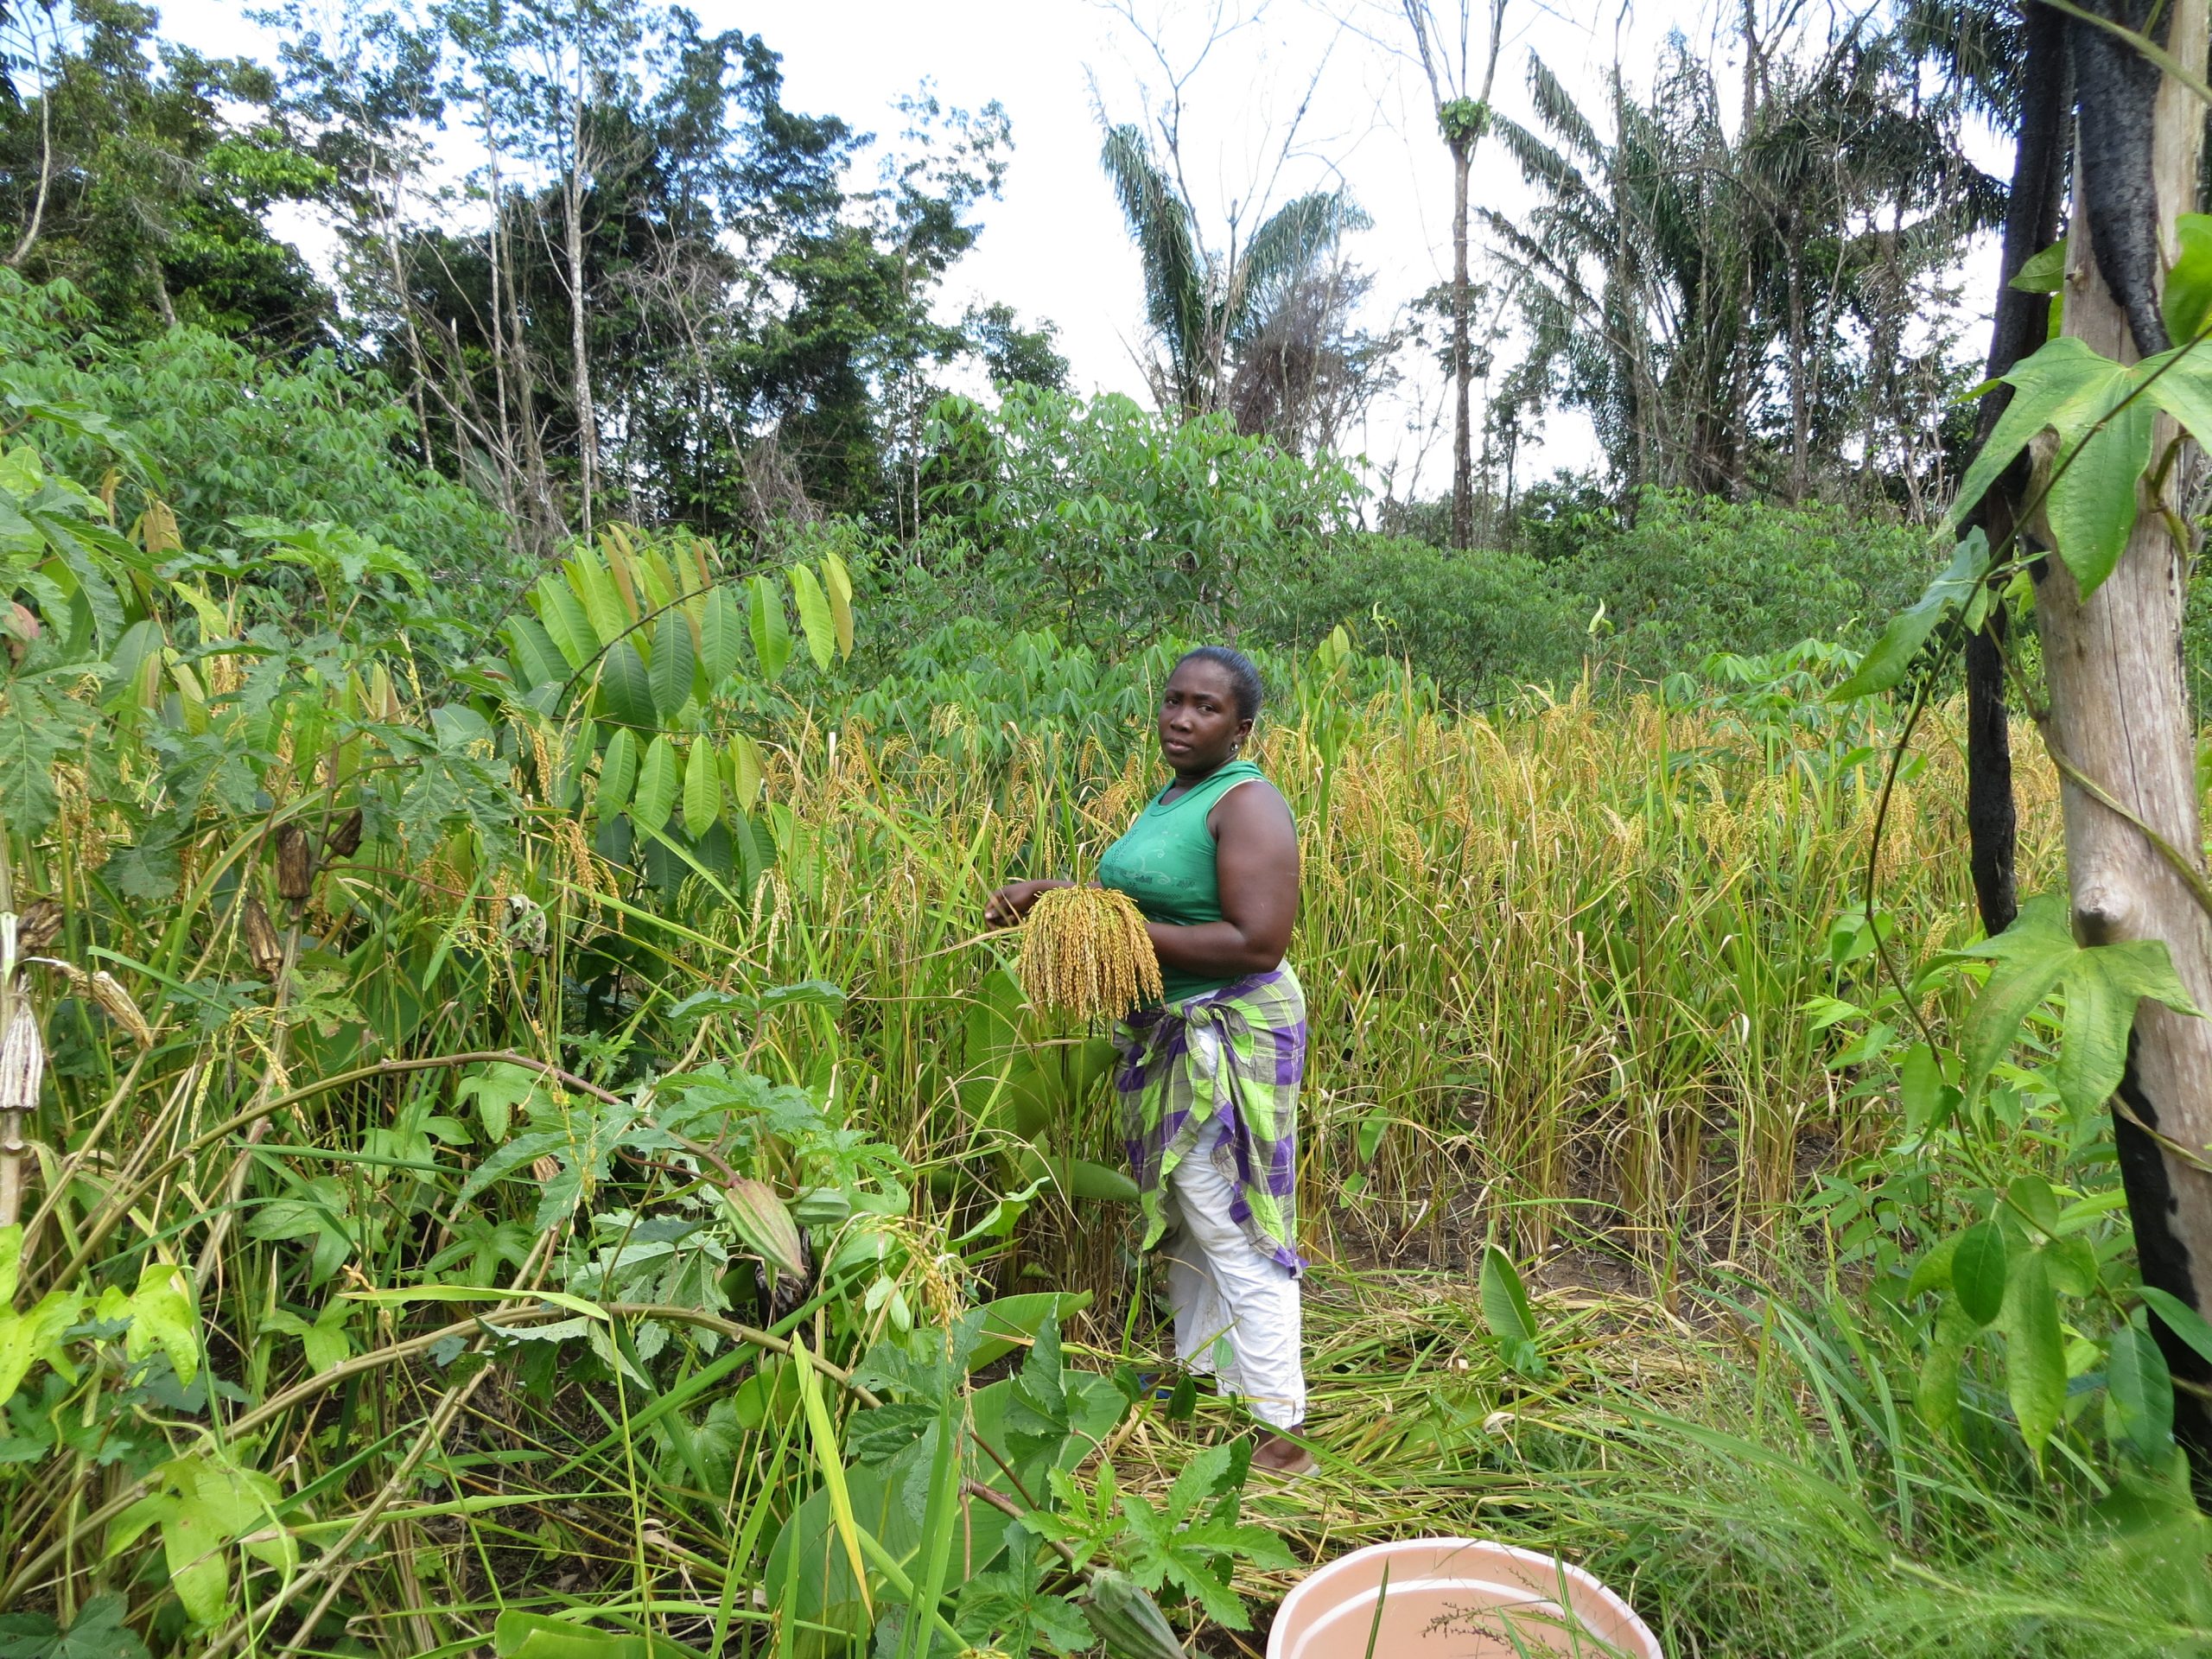 Afrikaanse namen voor Surinaamse planten